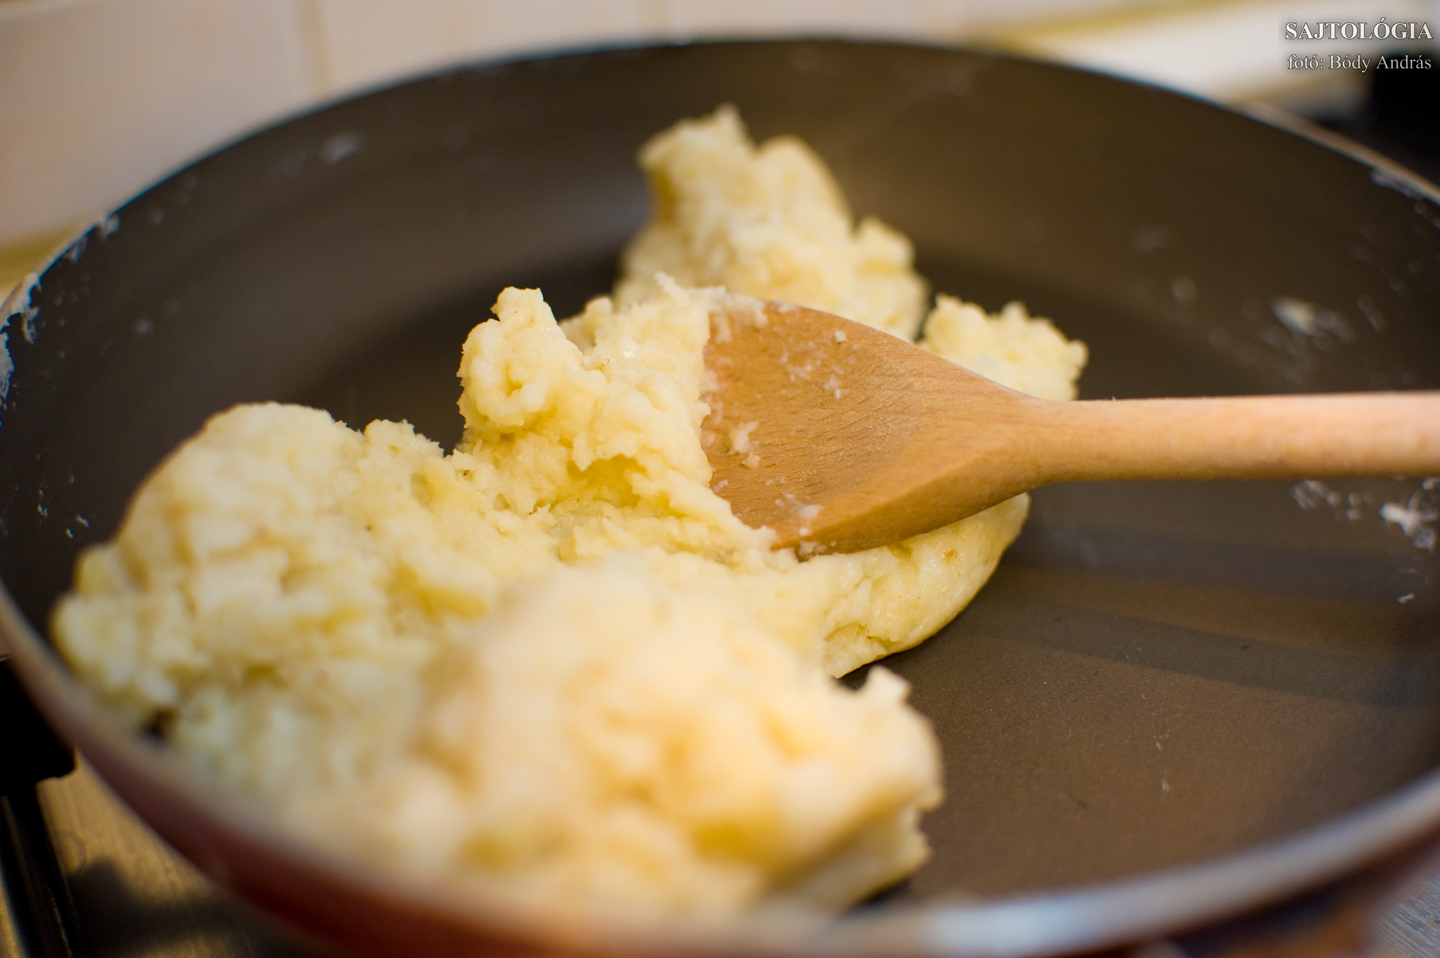 Pillanatok alatt összeáll serpenyőben a tészta alapja lisztből, vajból és tejből. AZ arányokat ízlés szerint variálhatjuk: kinek a lisztesebb, kinek a tojásosabb tészta fog jobban bejönni.